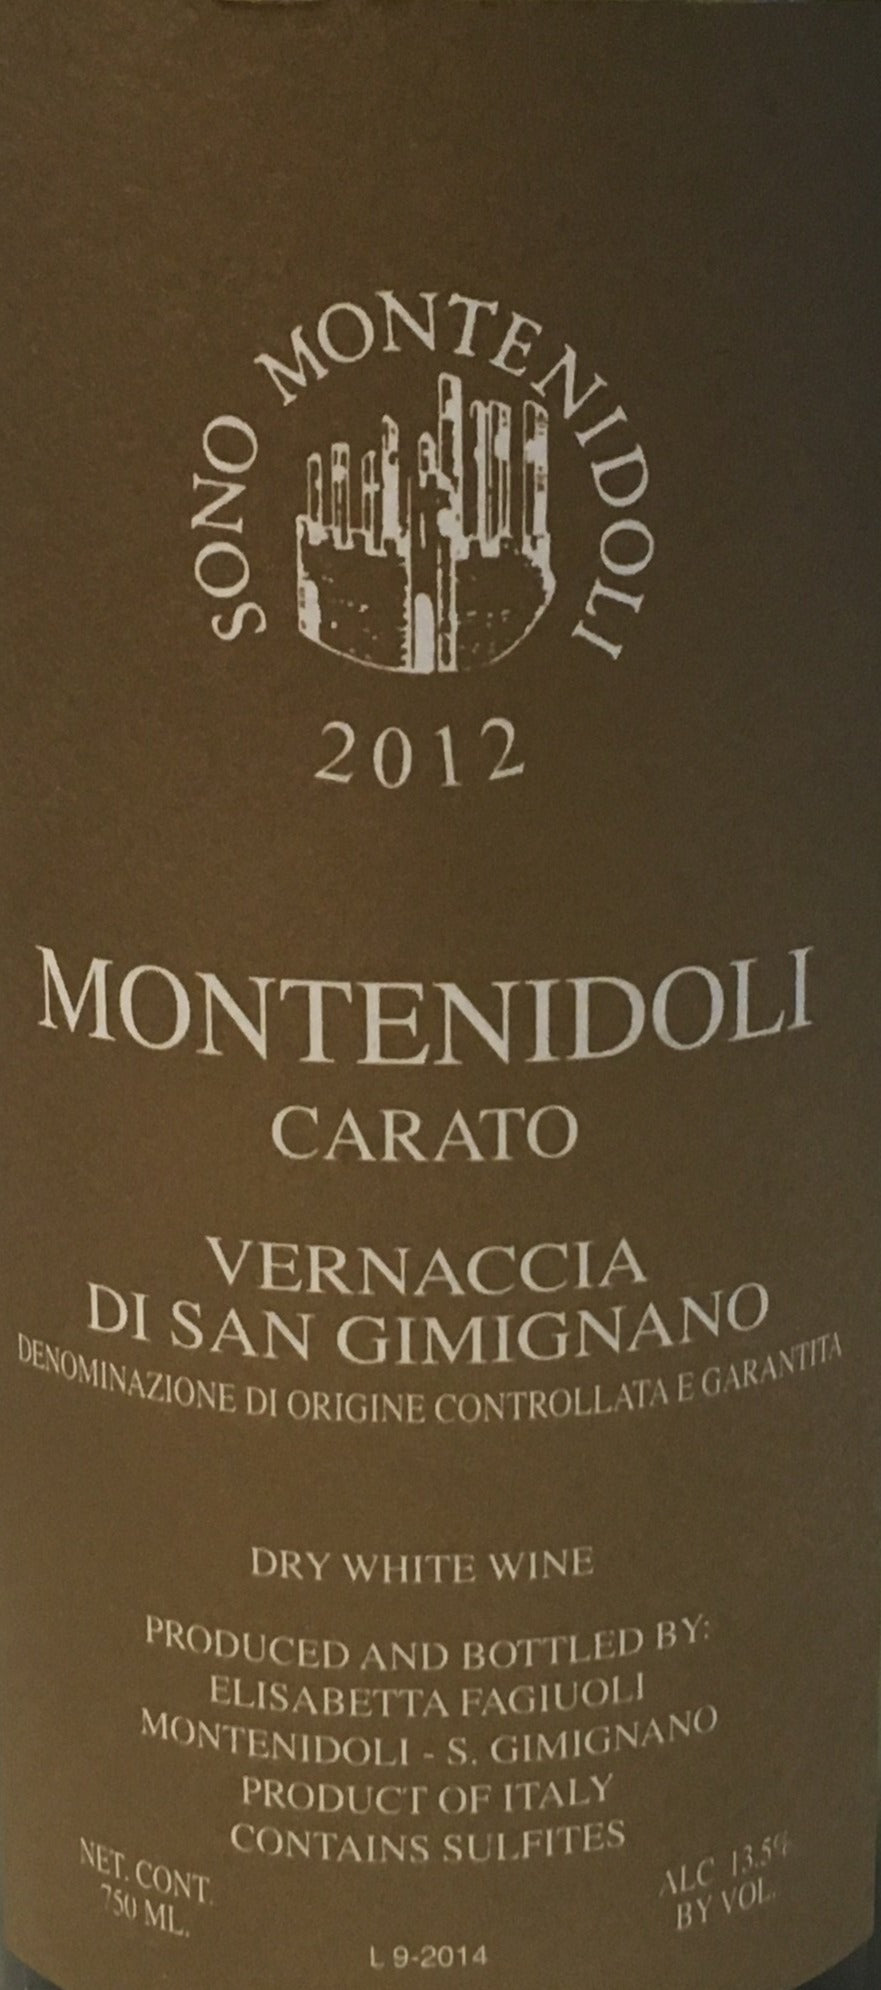 Montenidoli 'Carato' Vernaccia di San Gimignano - 2012